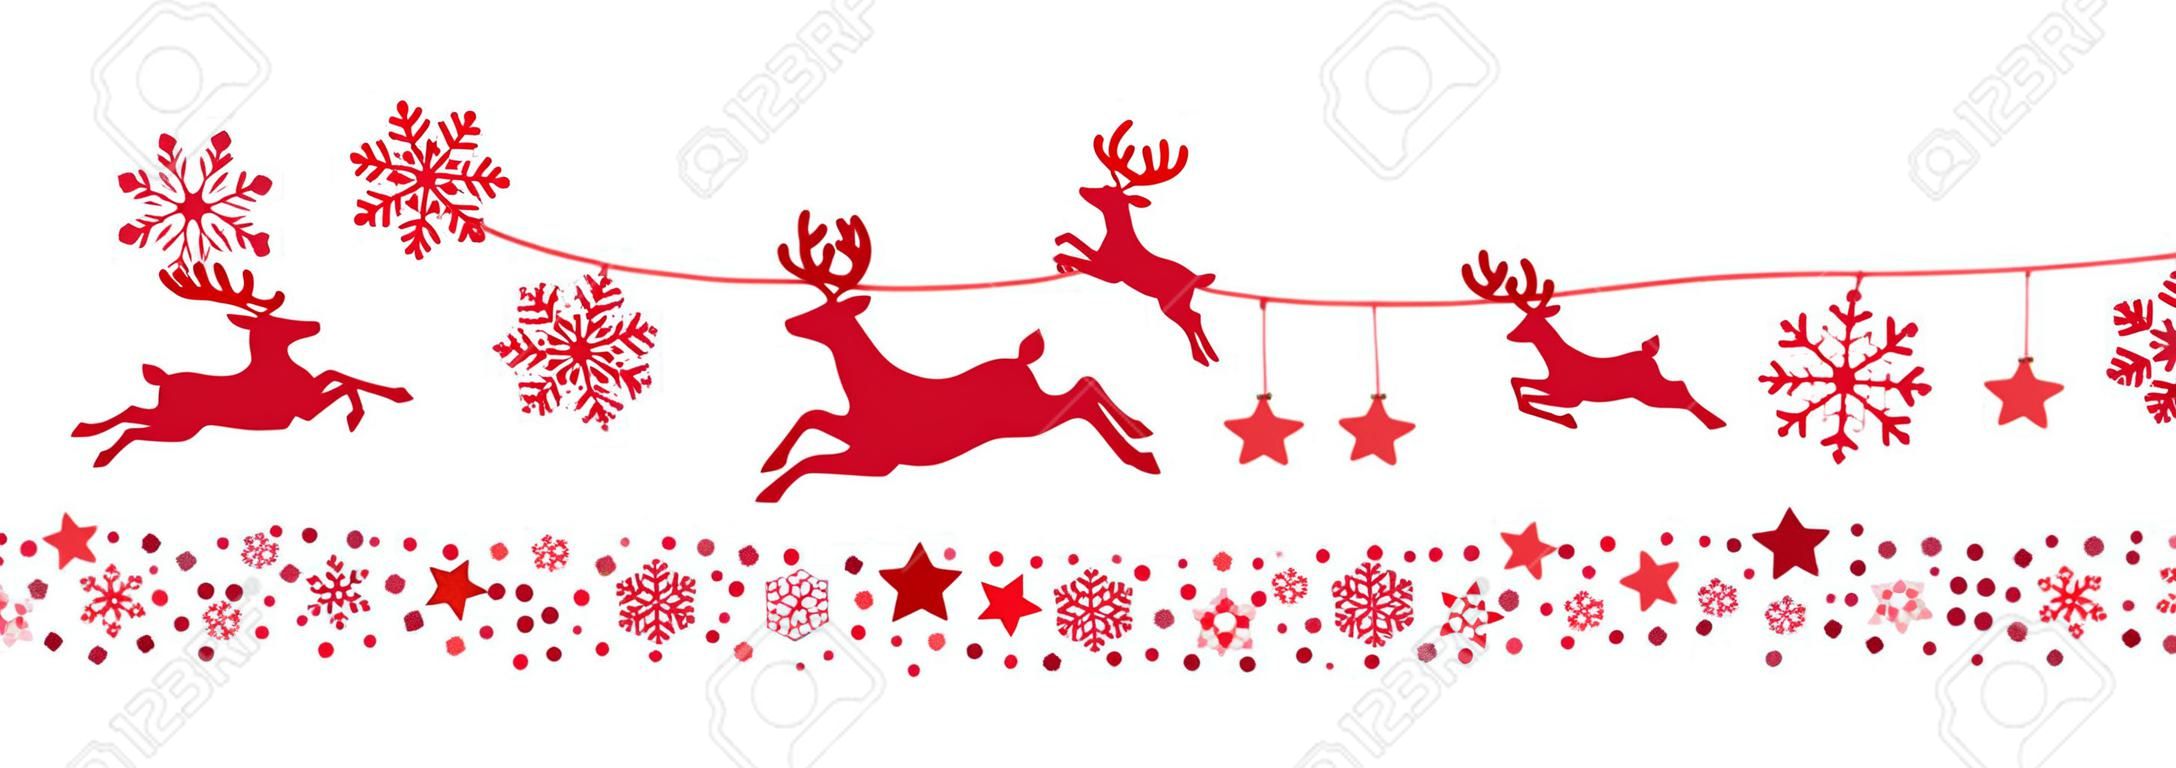 Санта санях оленей летающих снежинки красный силуэт